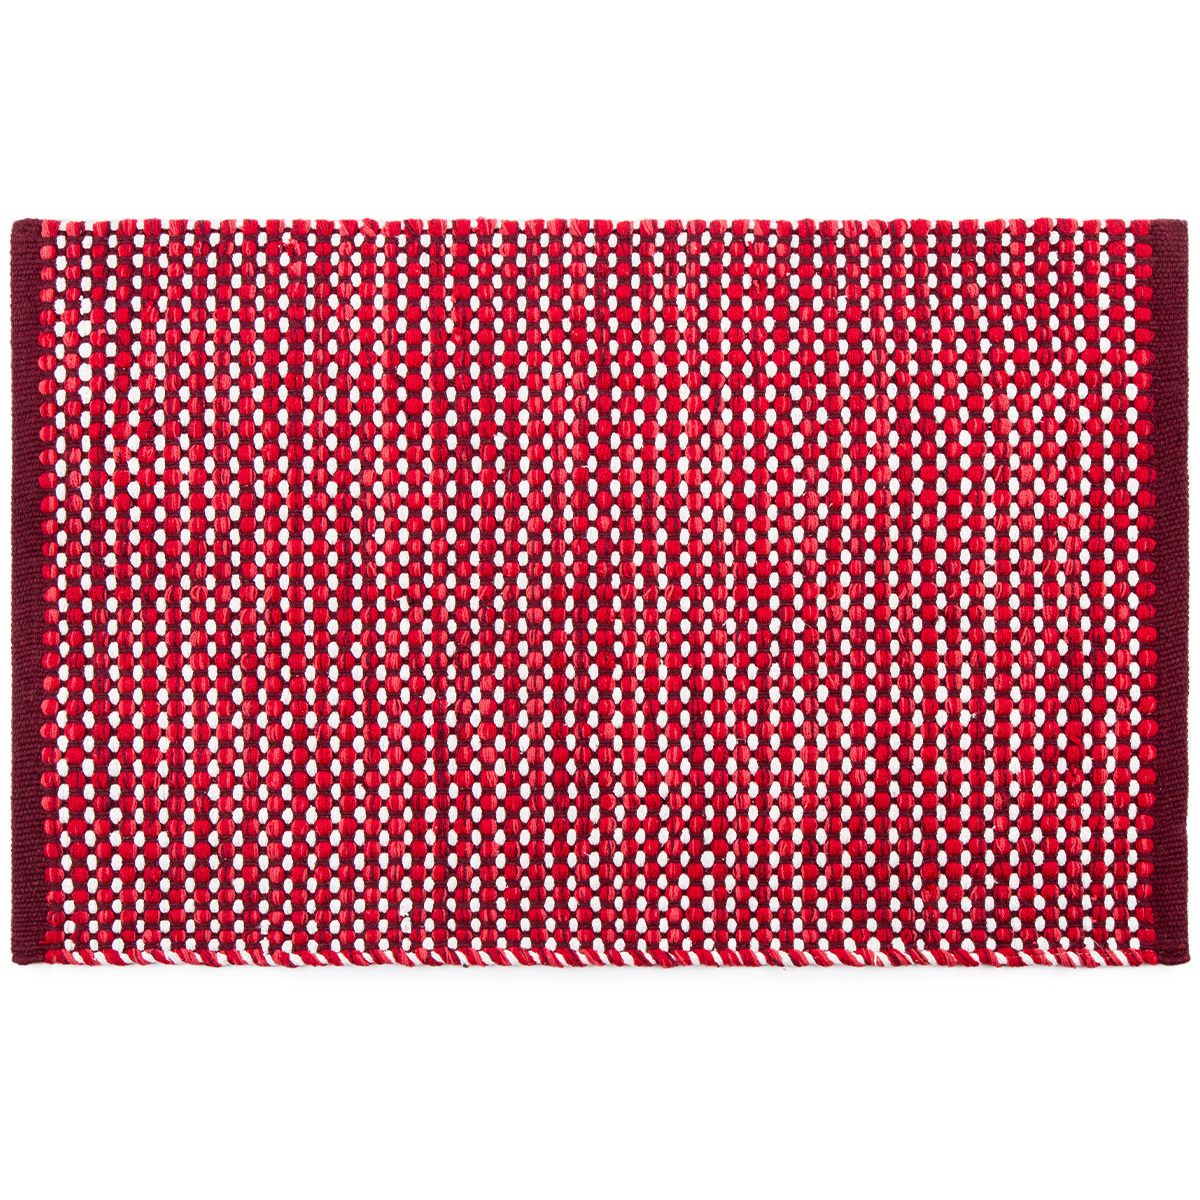 BO-MA Trading Kusový bavlněný koberec Elsa červená, 50 x 80 cm - 4home.cz